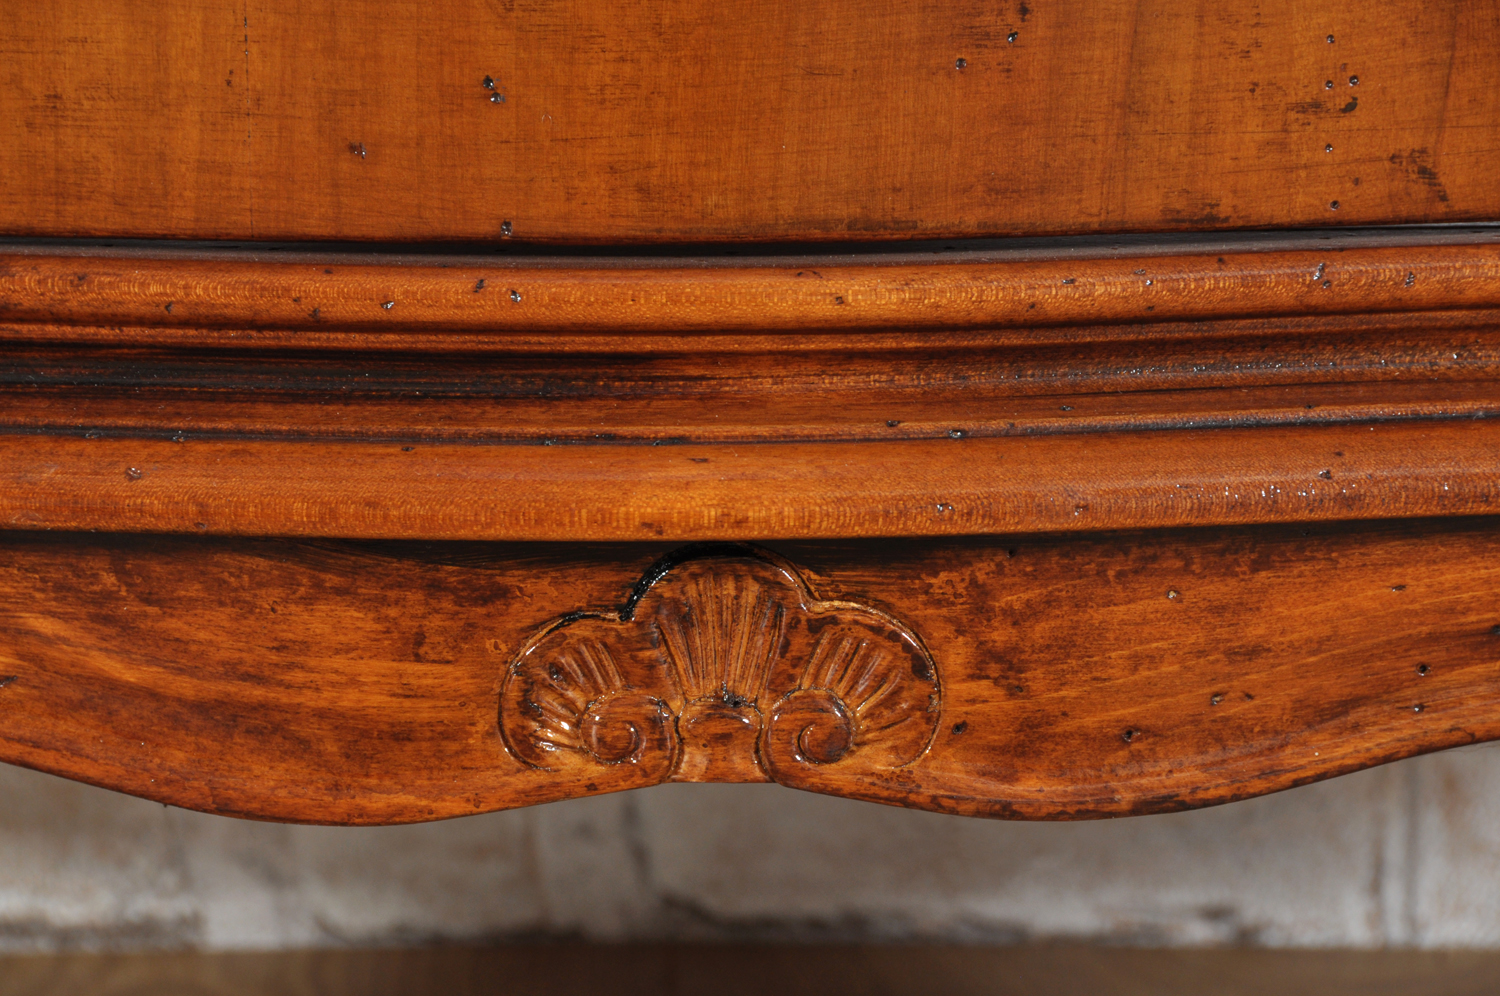 cristalliera vetrinetta veneziana in stile classico del 1700 arredo di lusso mosso e sagomato realizzato come il manufatto originale risalente alla metà del 700 con le 4 gambe alte sagomate e scolpite a mano